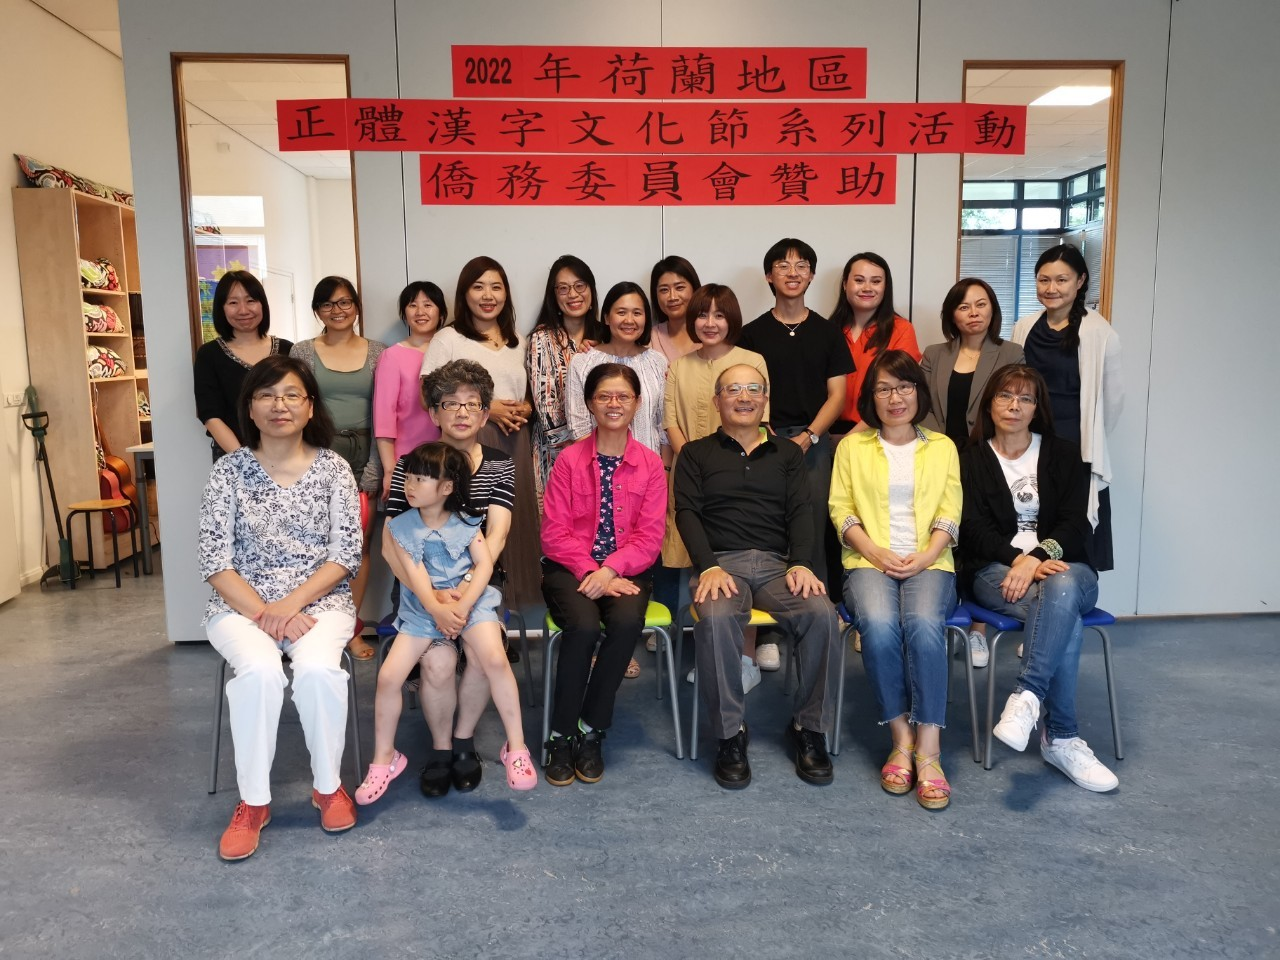 荷蘭台北學校  2022年漢字文化節活動圖片